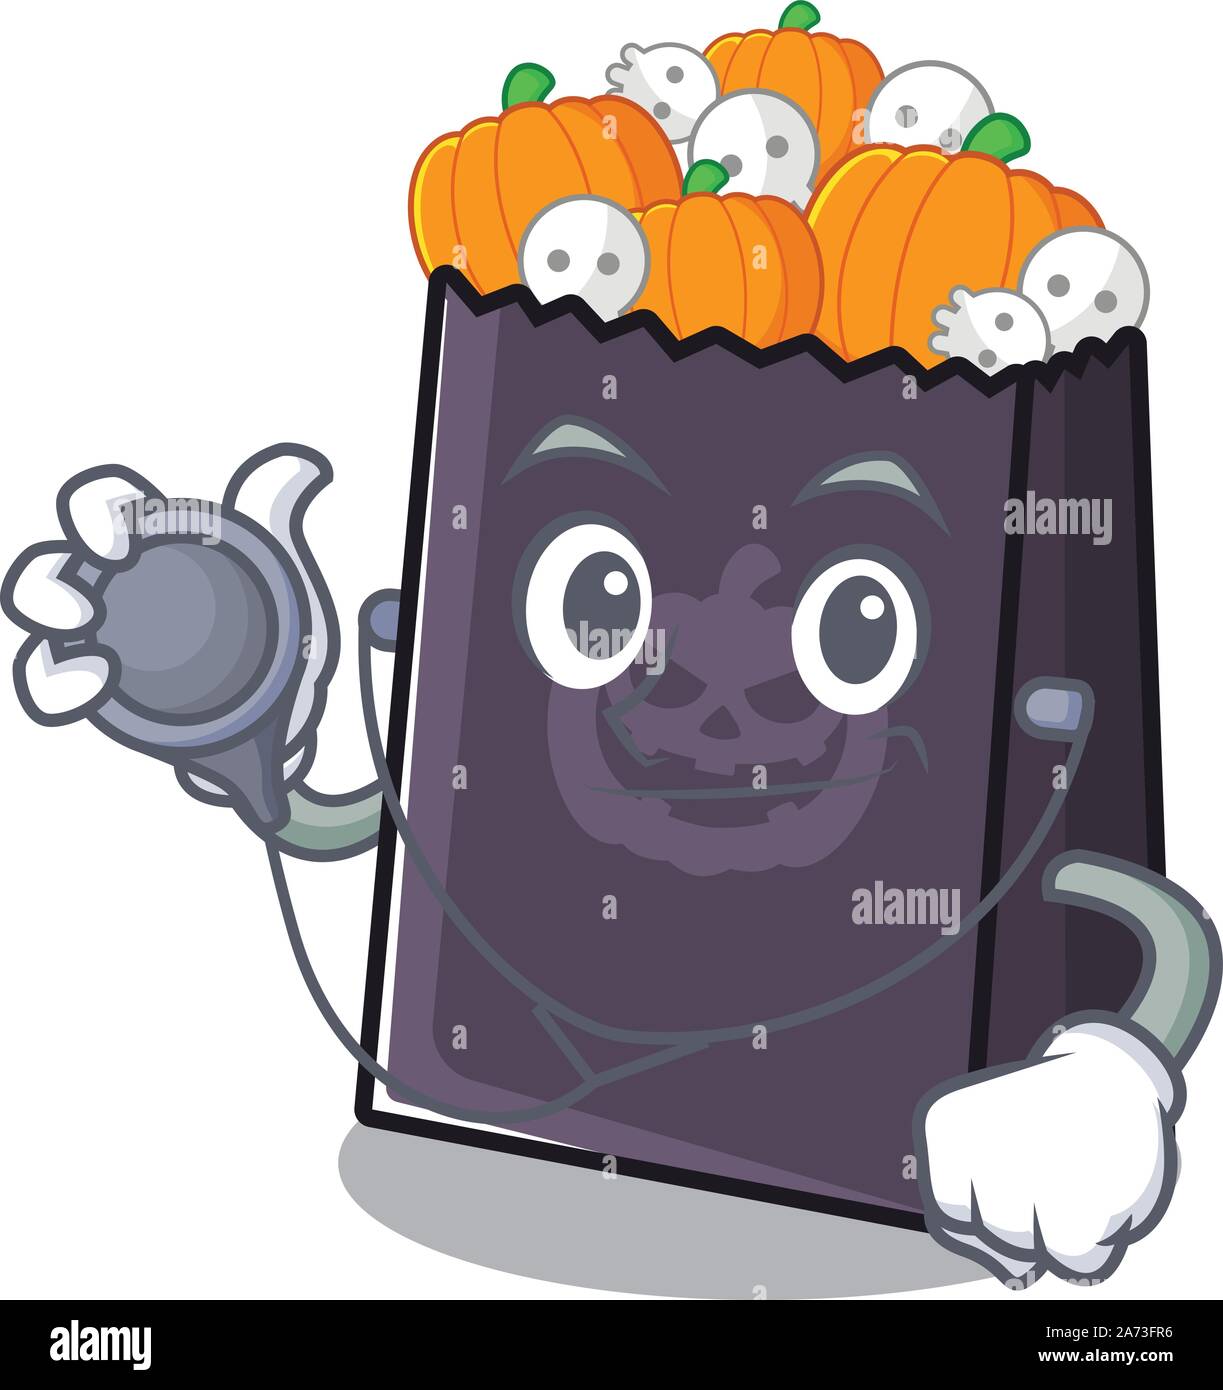 Medico di halloween mascotte di sacca isolata con il cartoon Illustrazione Vettoriale